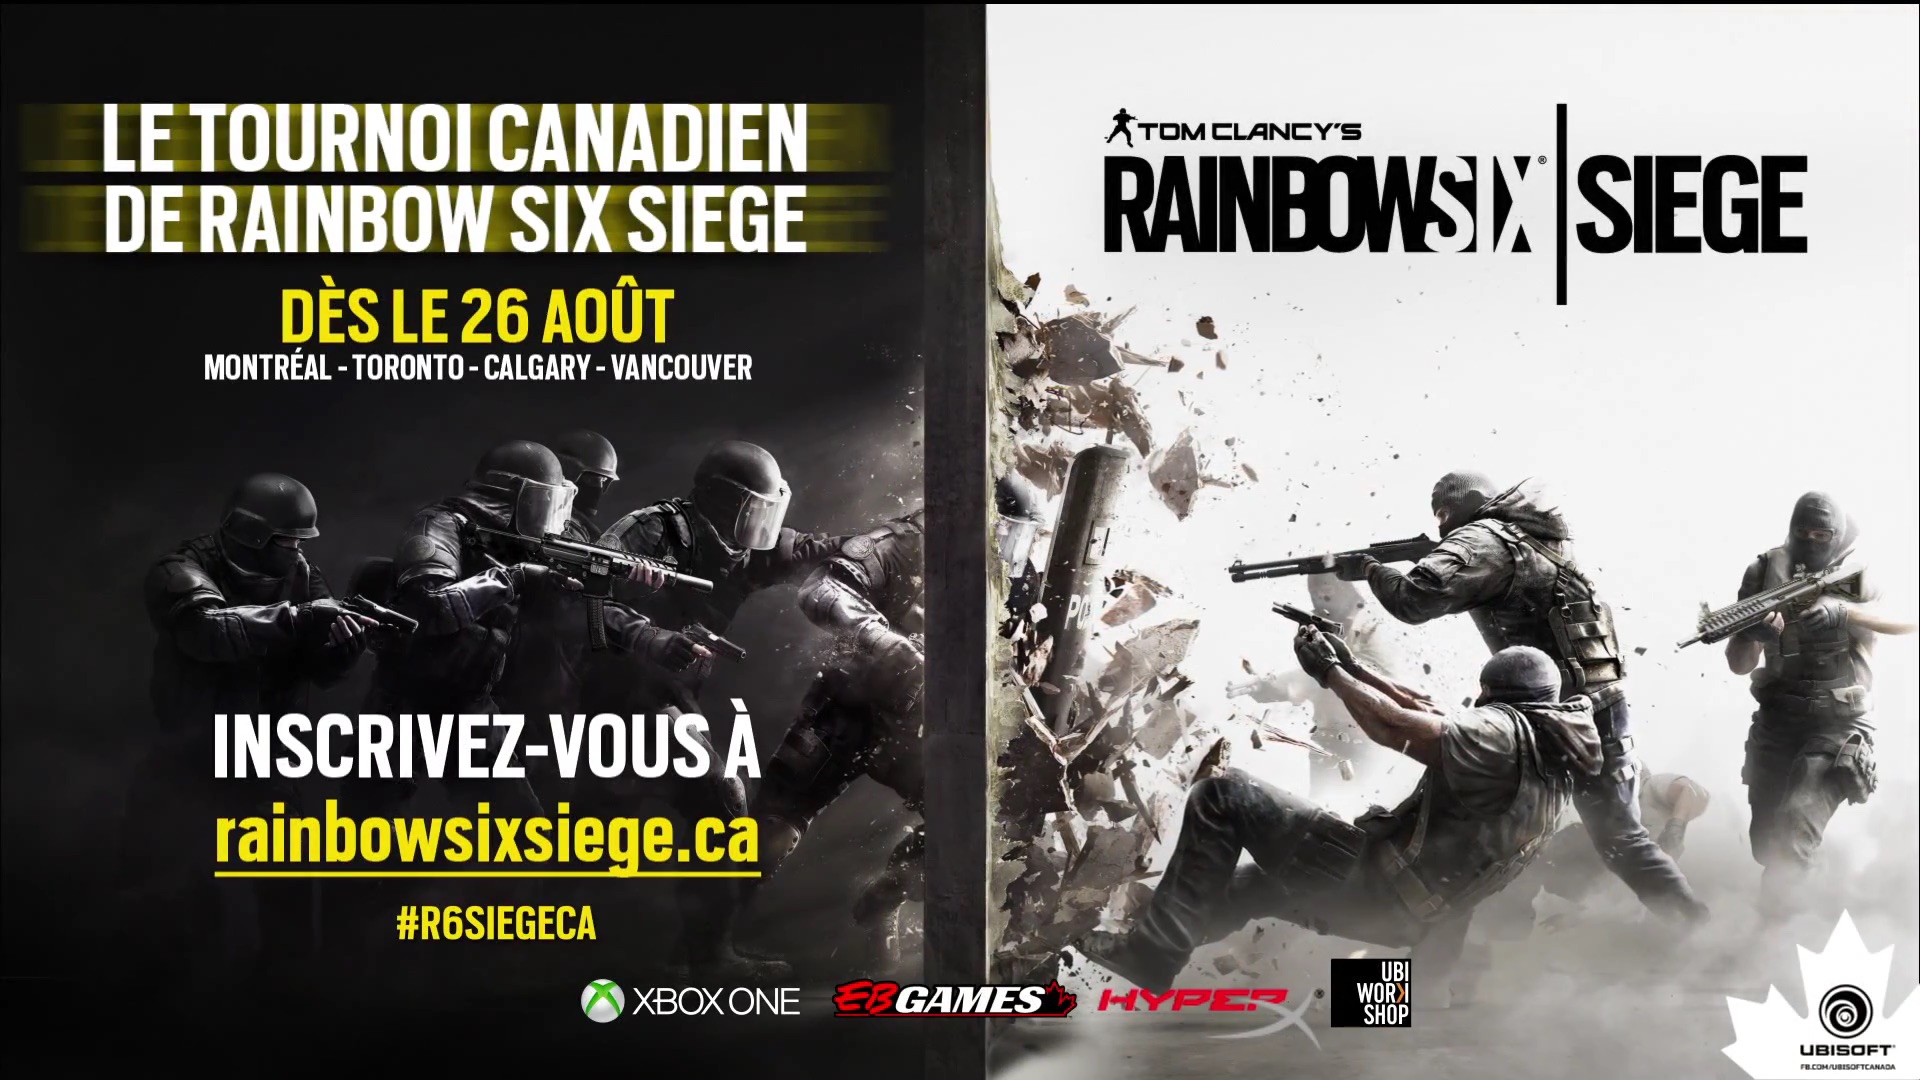 Tournoi Canada Tom Clancys Rainbow Six Siege - Ubisoft